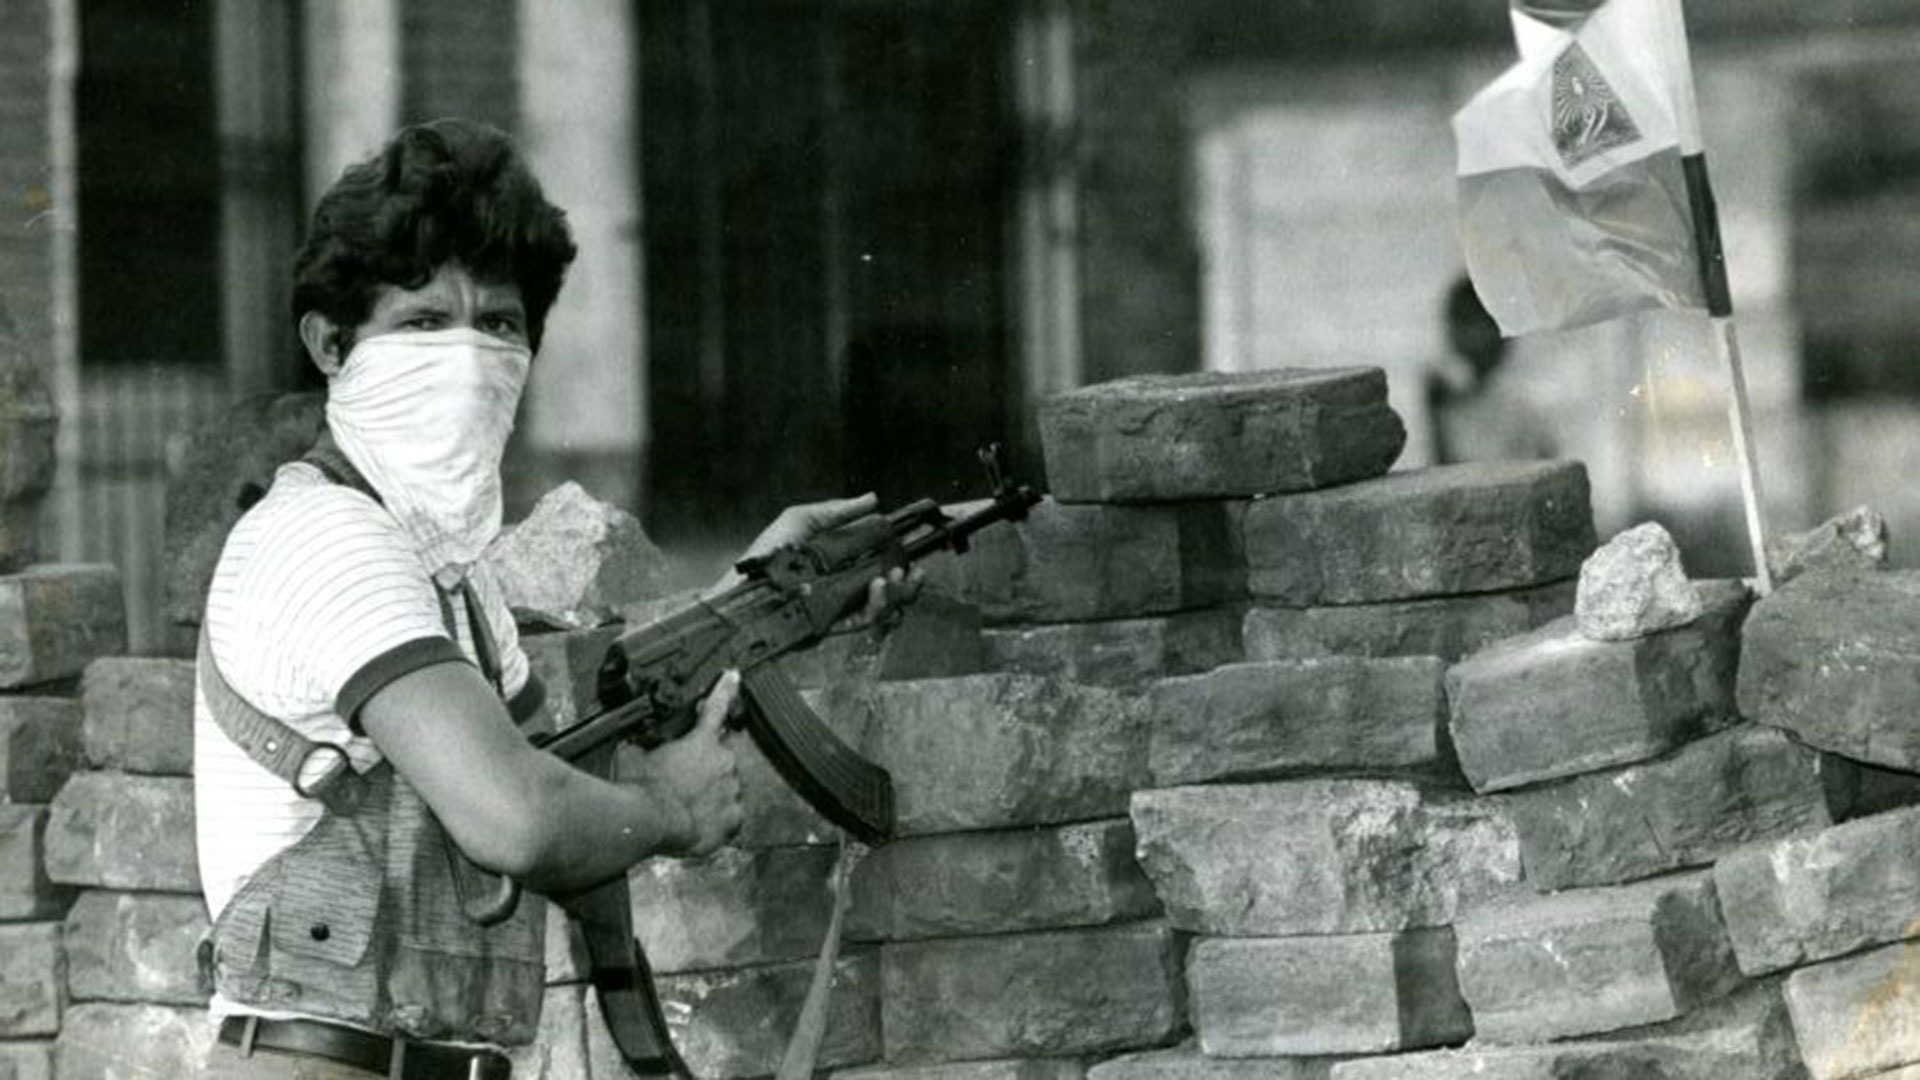 Los reclamos del Frente Sandinista desde la oposición eran particularmente violentos y en muchas ocasiones utilizando armas de guerra, como se aprecia en la fotografía de archivo.